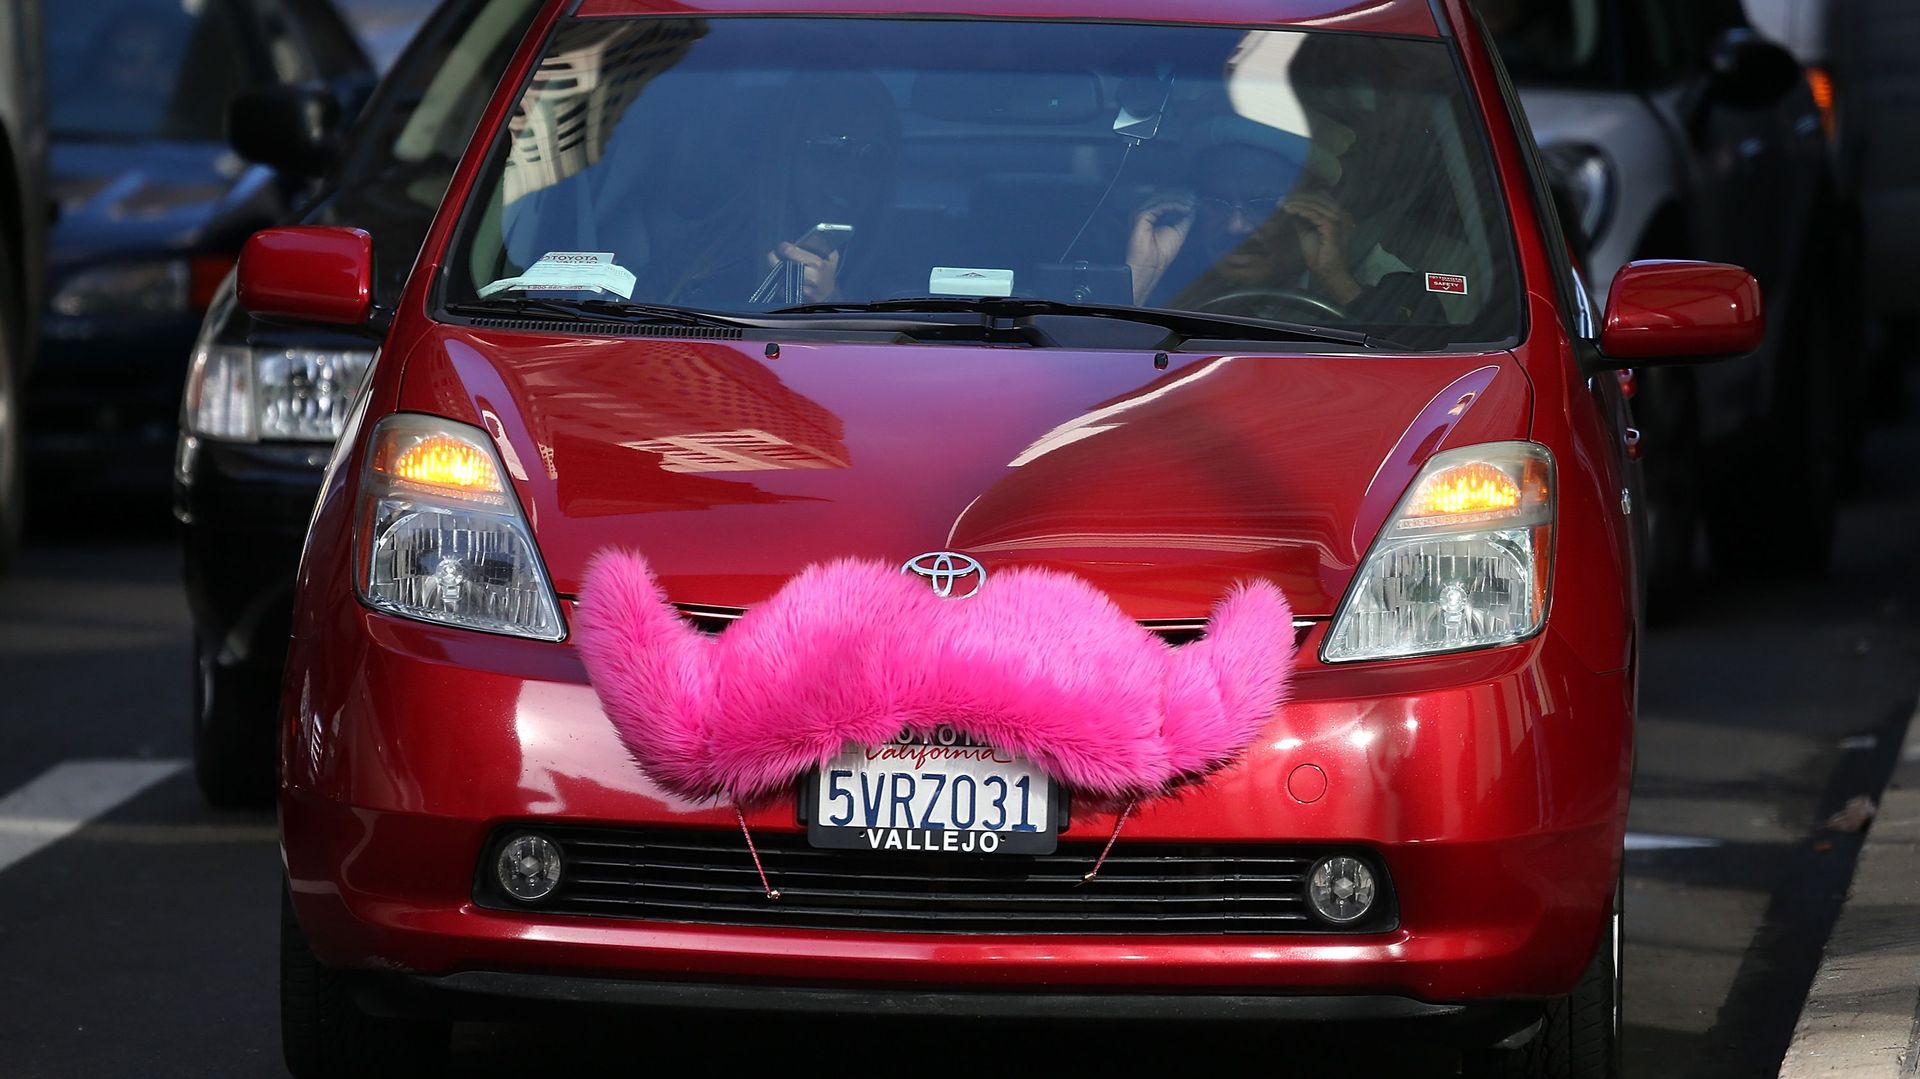 A San Francisco, Le covoiturage de type Uber assure déjà près d'un tiers des courses de taxis.